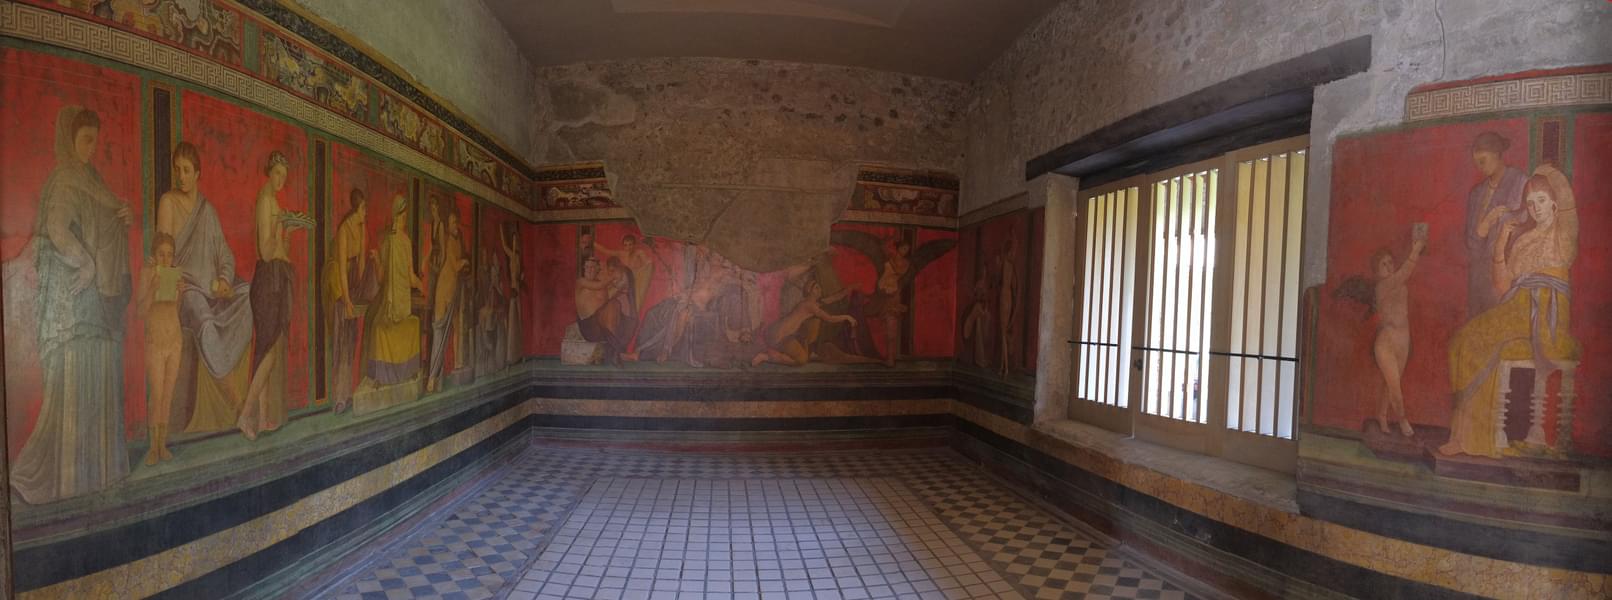 Roam inside Villa Dei Misteri